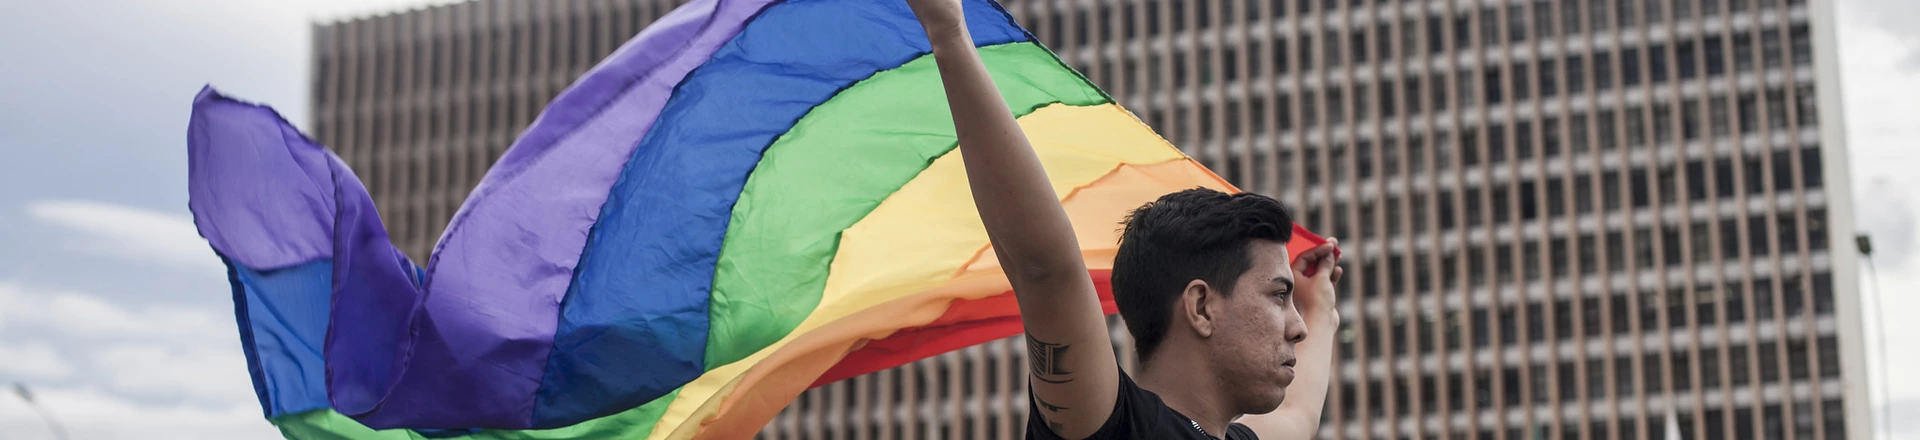 MEC corta homofobia da lista de preconceitos que devem ser combatidos na educação